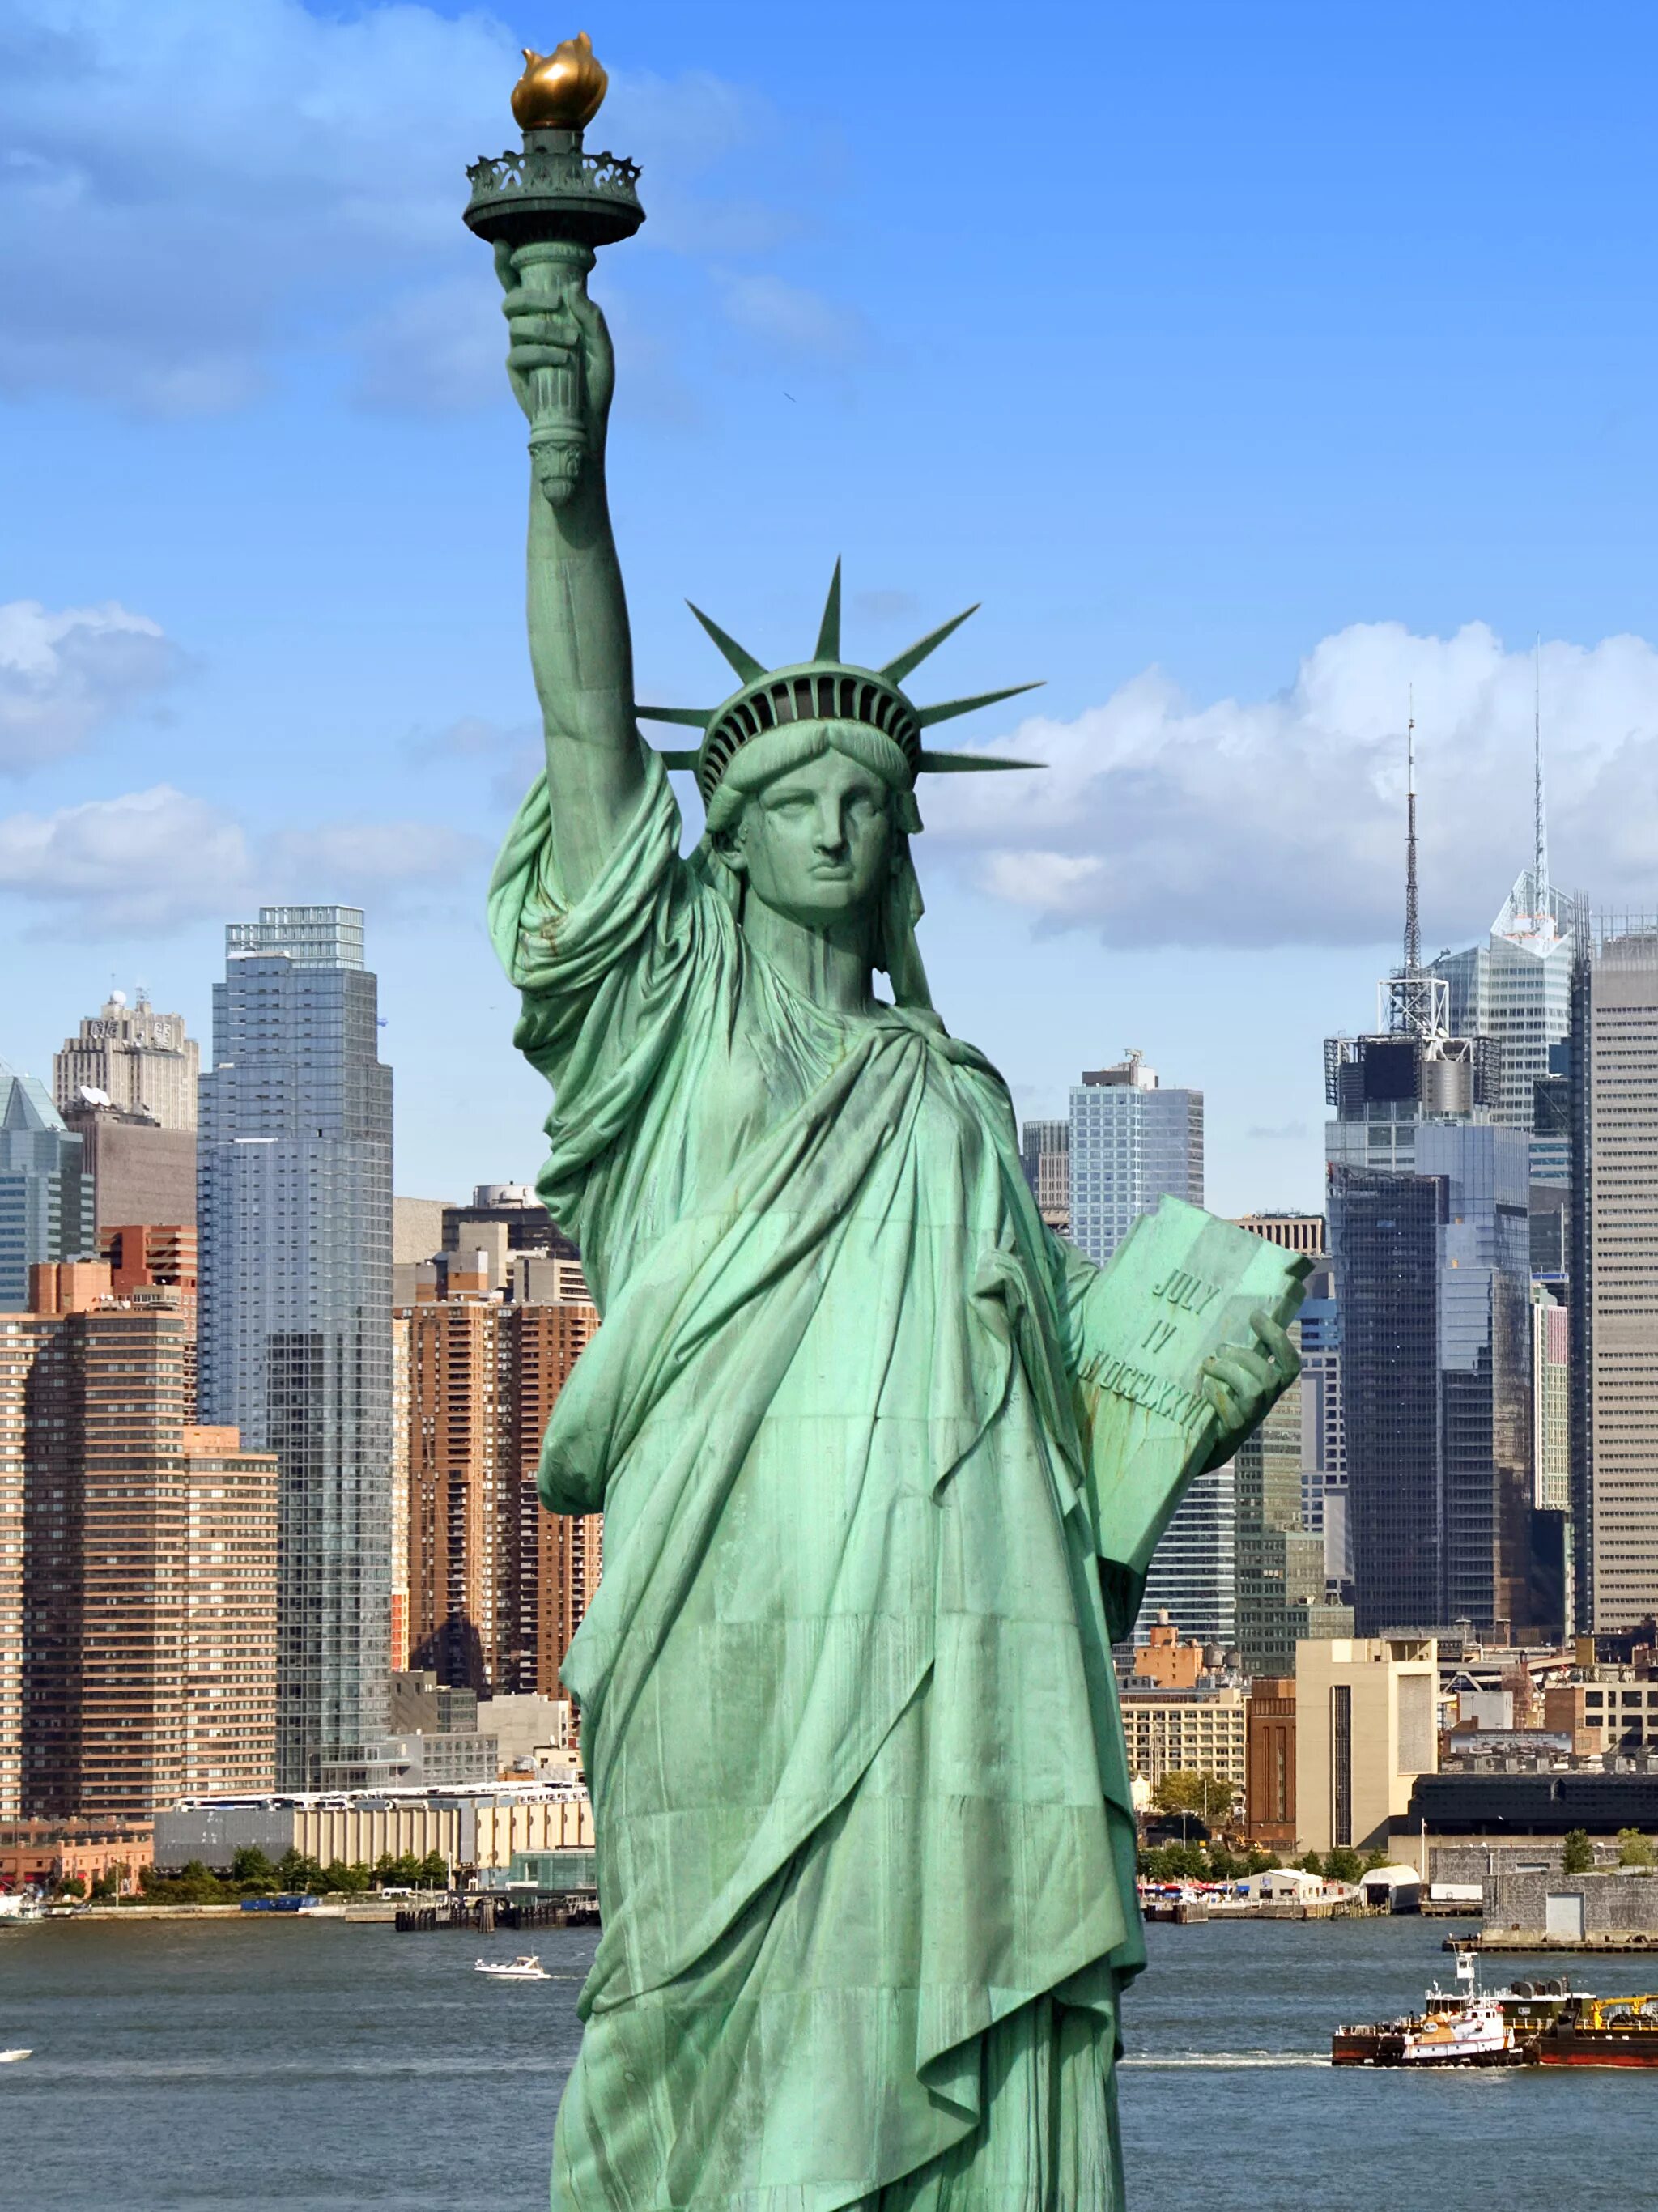 Чем известна страна сша. Статуя свободы США. Америка Нью-Йорк статуя свободы. Нью-Йорк бстатуясвободы. Нью-Йорк Сити статуя свободы.